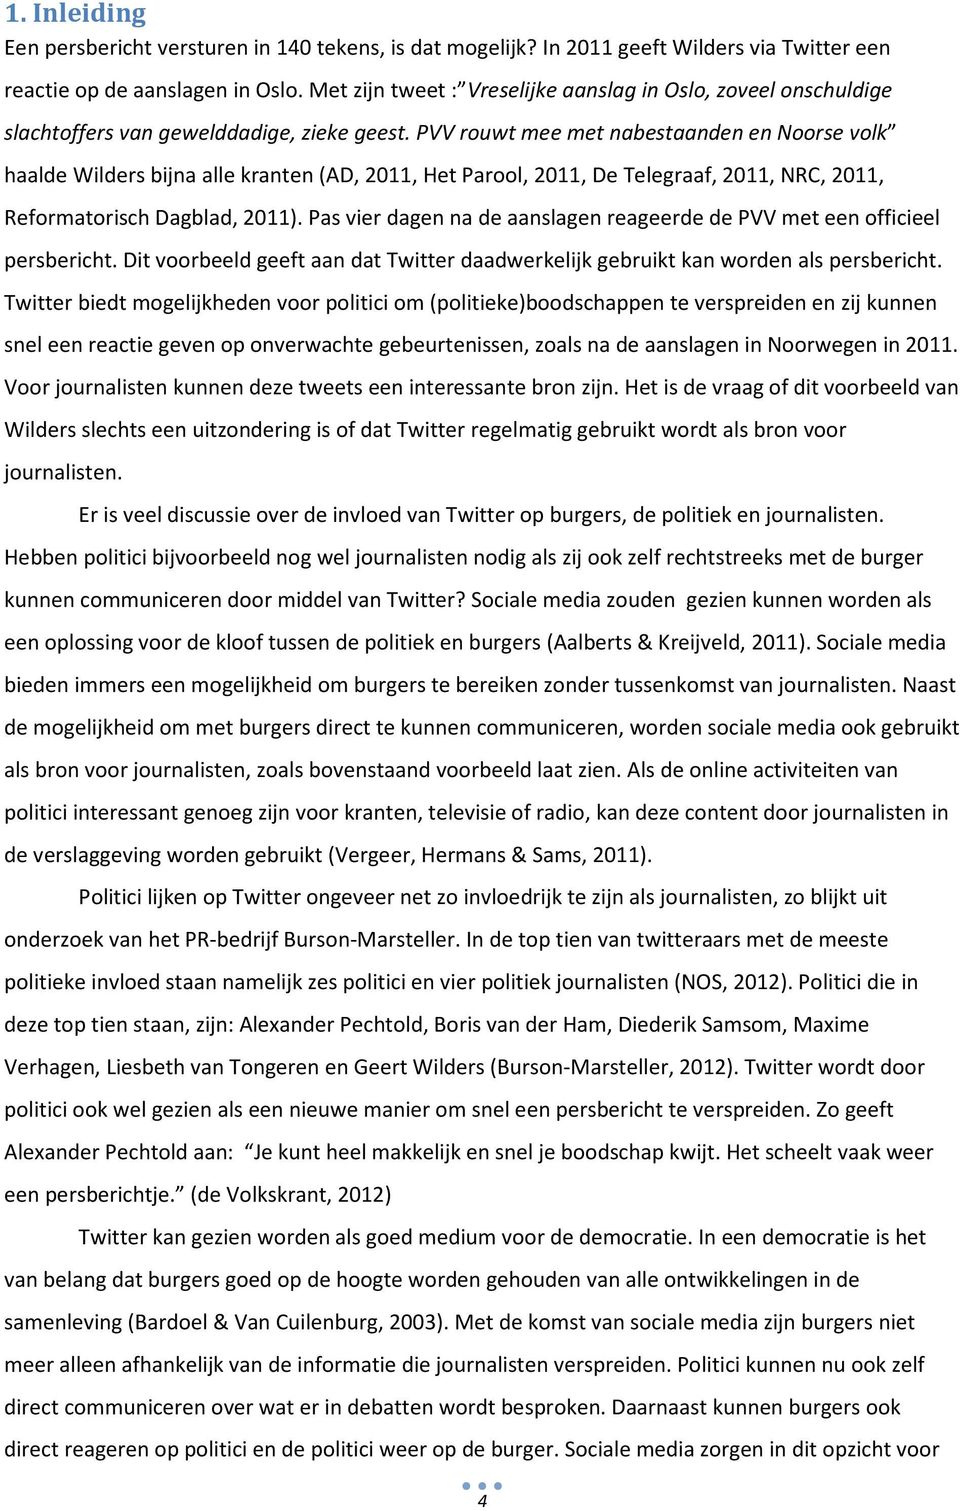 PVV rouwt mee met nabestaanden en Noorse volk haalde Wilders bijna alle kranten (AD, 2011, Het Parool, 2011, De Telegraaf, 2011, NRC, 2011, Reformatorisch Dagblad, 2011).